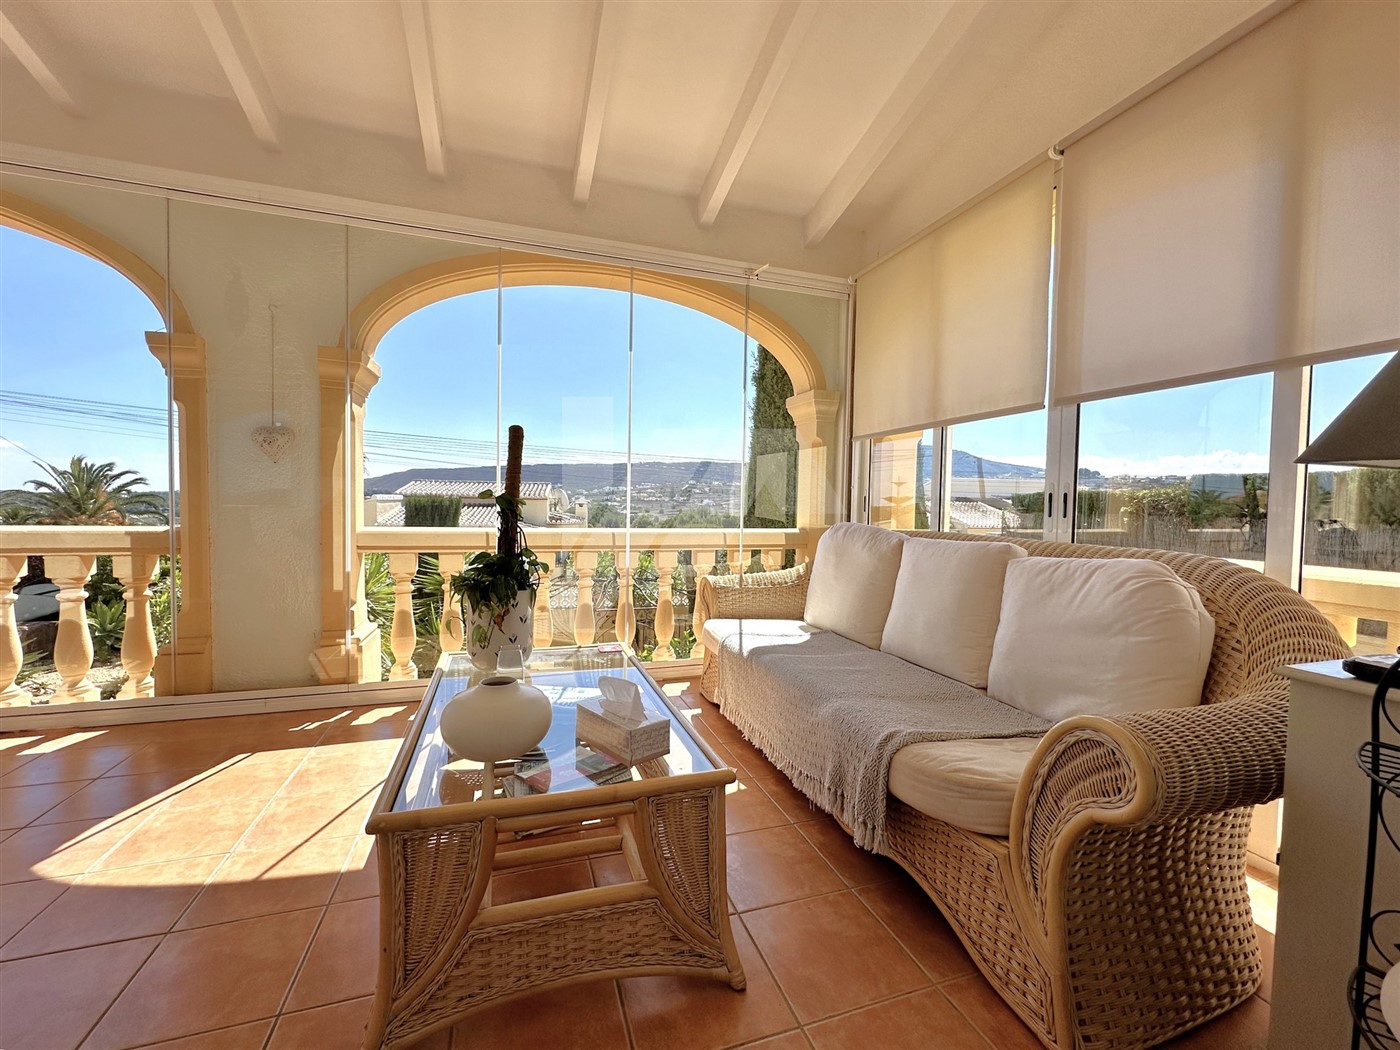 Charmante villa méditerranéenne à vendre à Benitachell, avec vue dégagée sur la montagne.